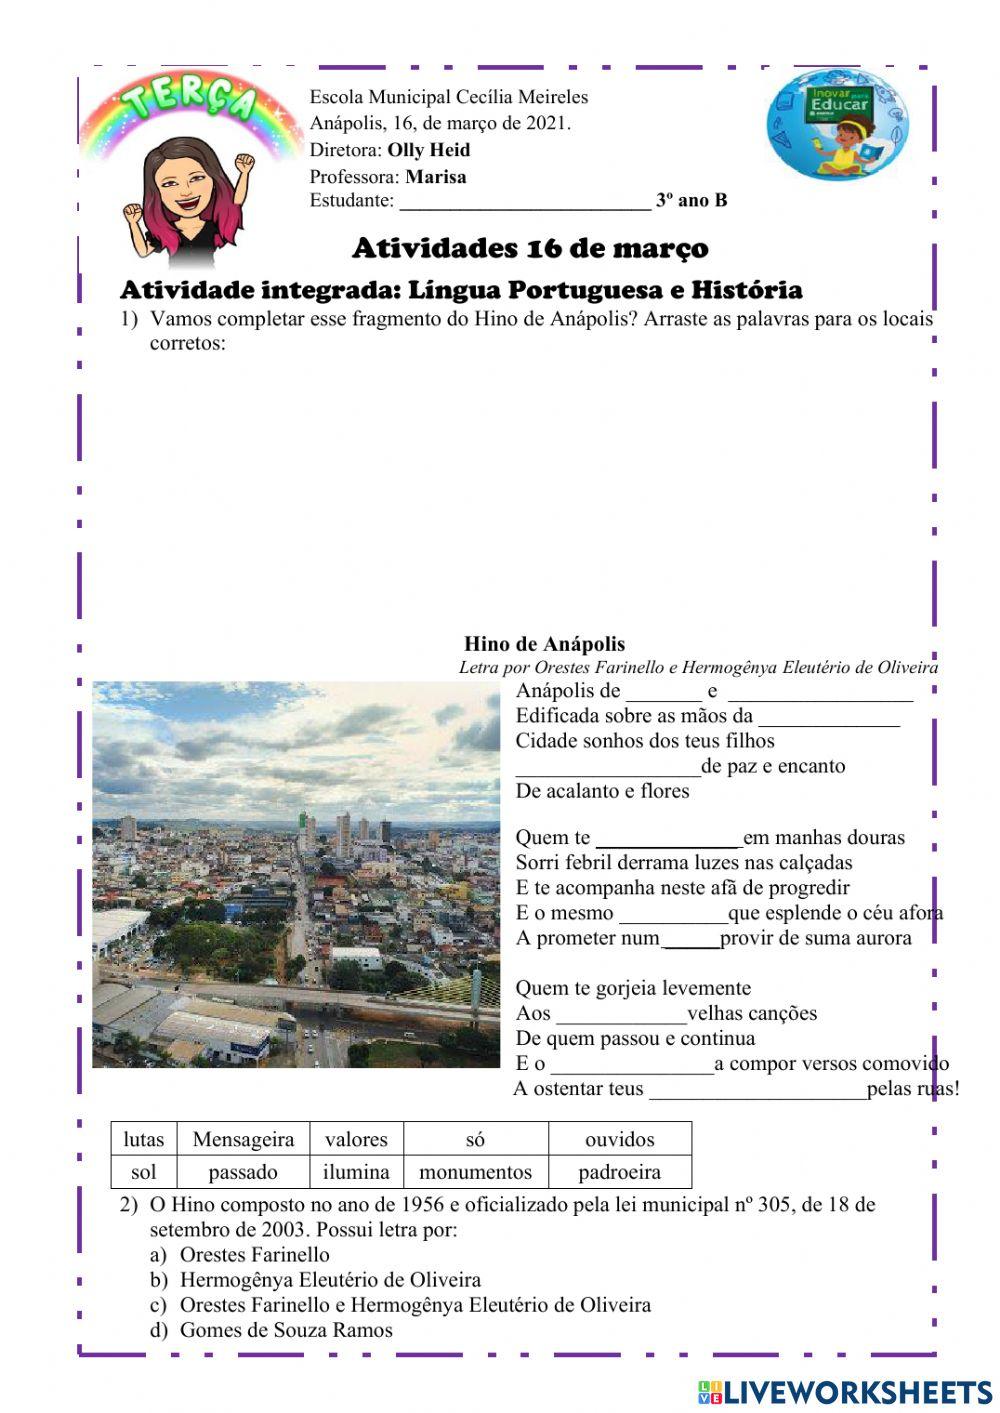 Atividade Língua Portuguesa e História -  16 de março